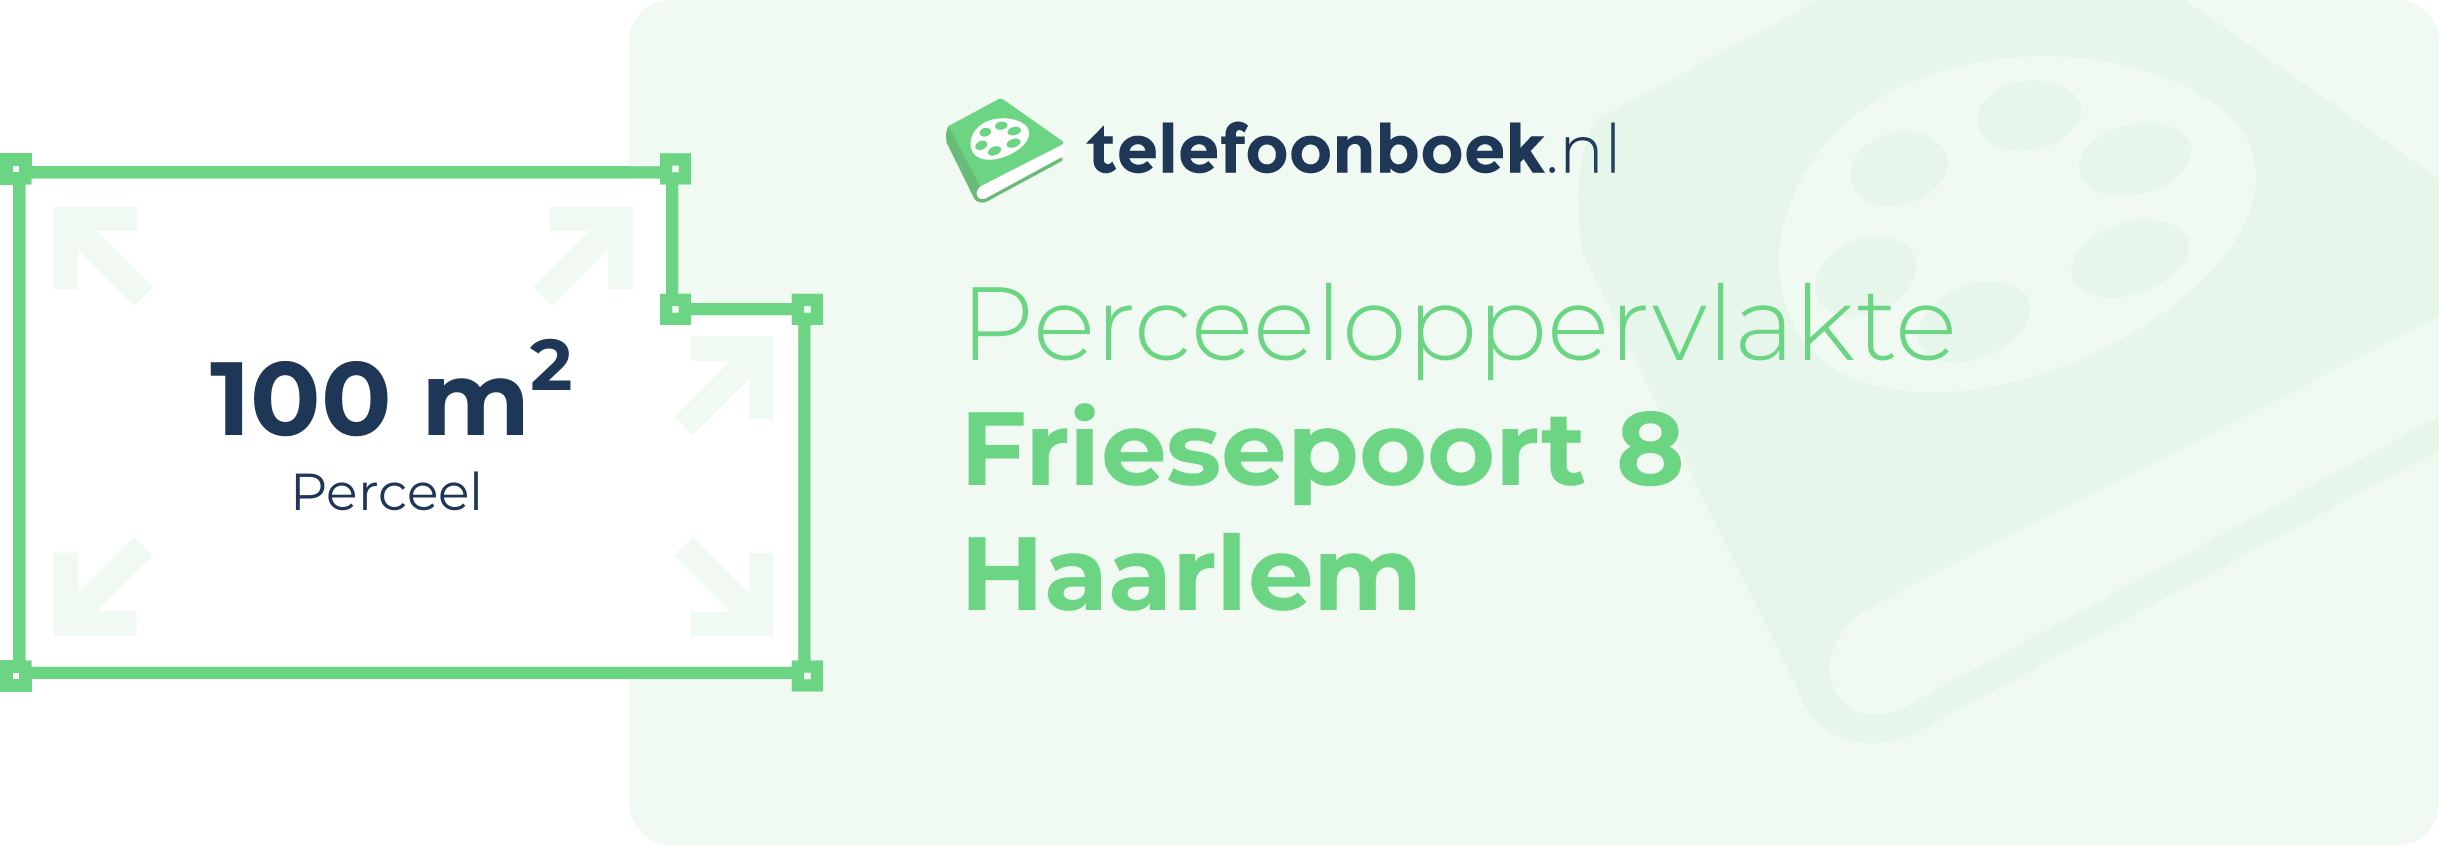 Perceeloppervlakte Friesepoort 8 Haarlem